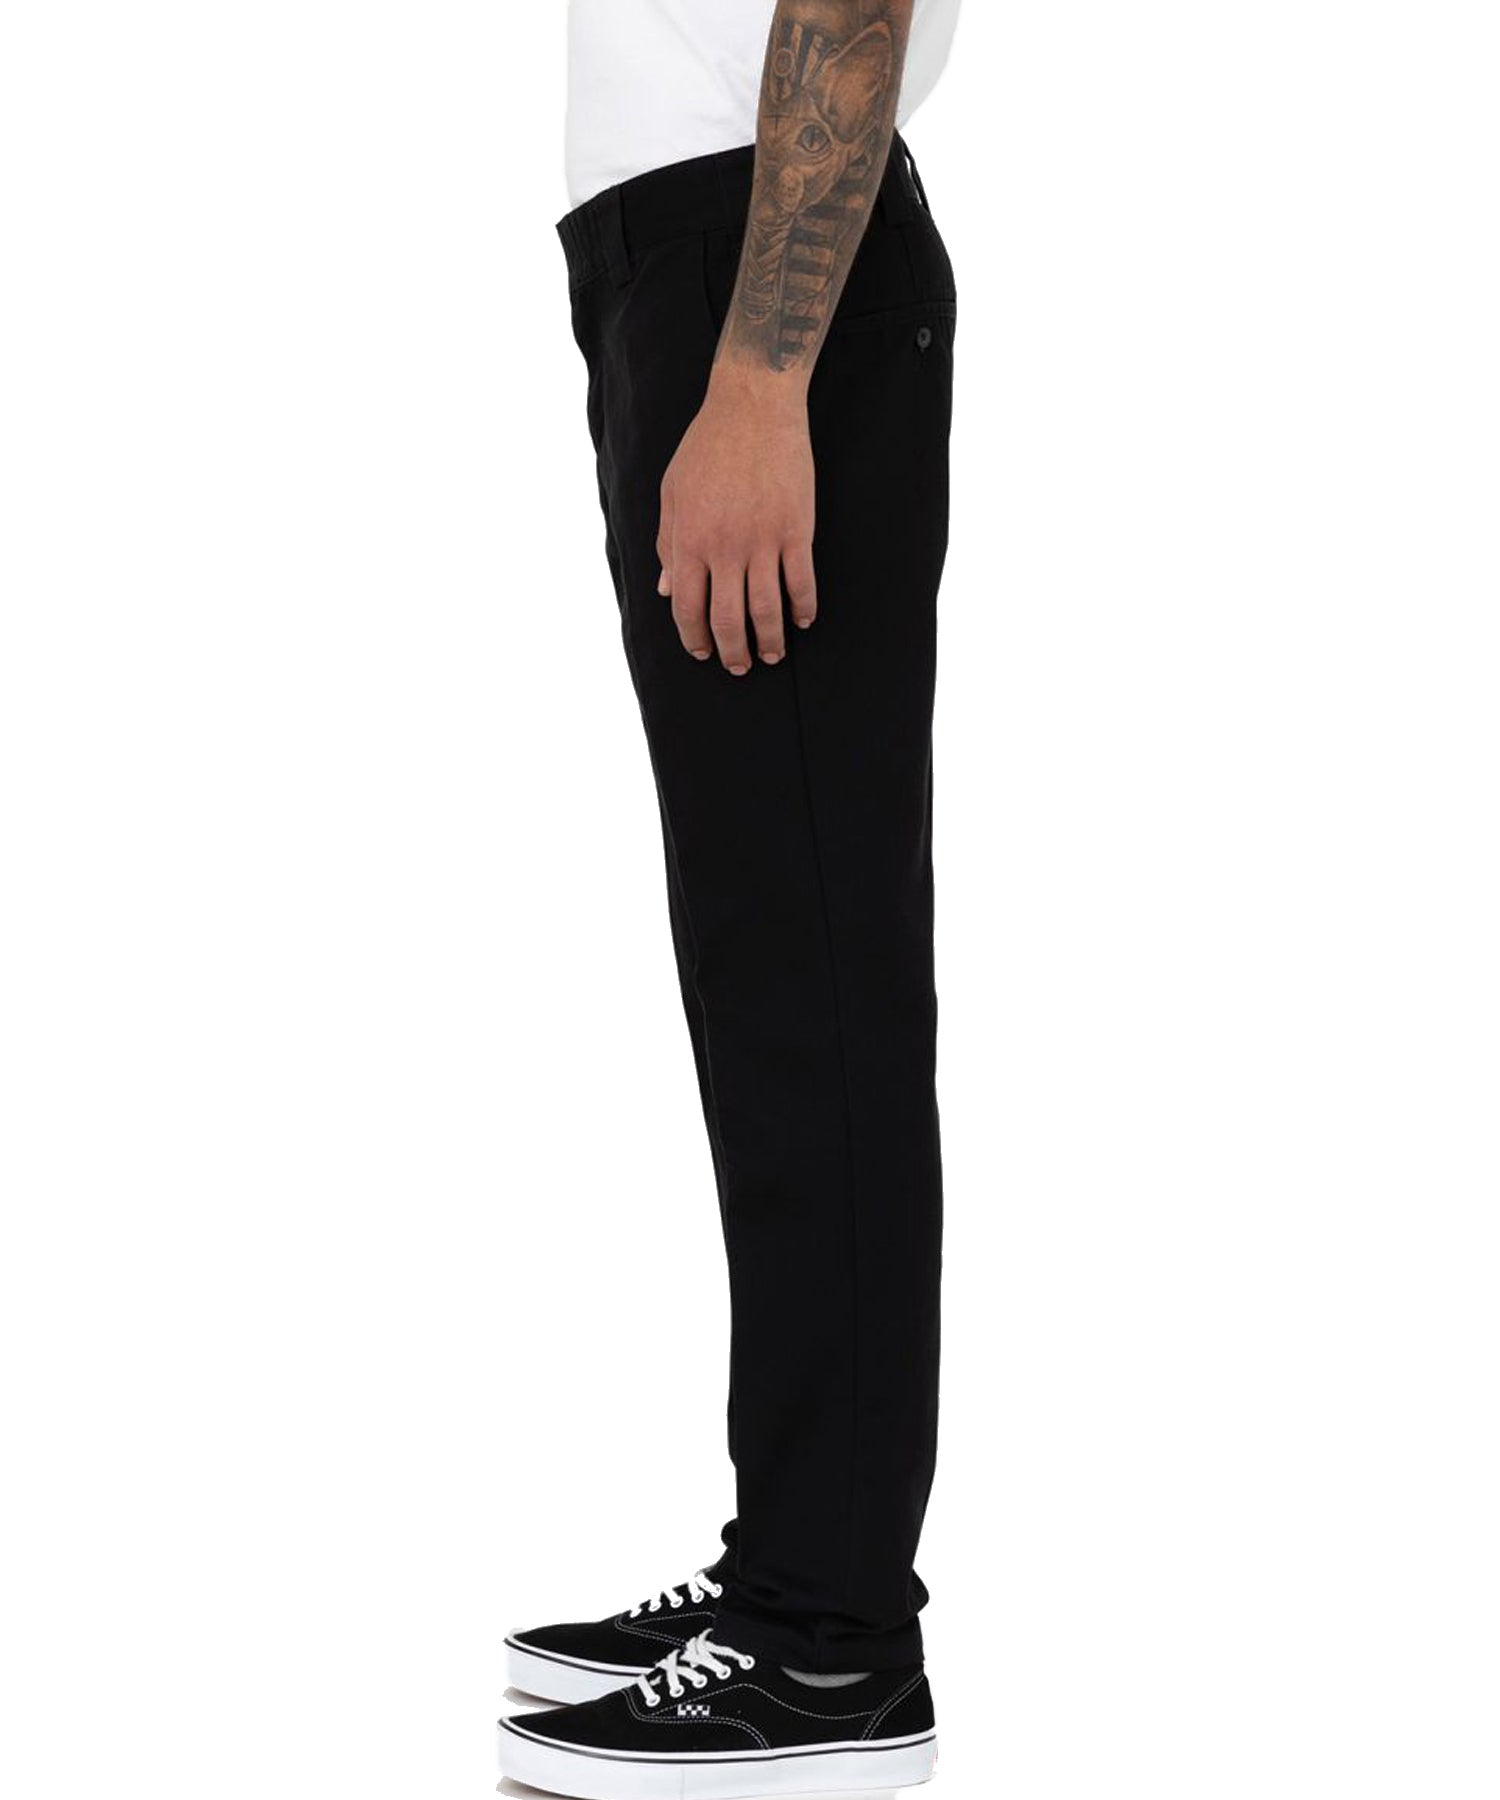 Pantalón largo dickies work pant 872 de color negro-entallado-un tejido antimanchas resistente a las arrugas.